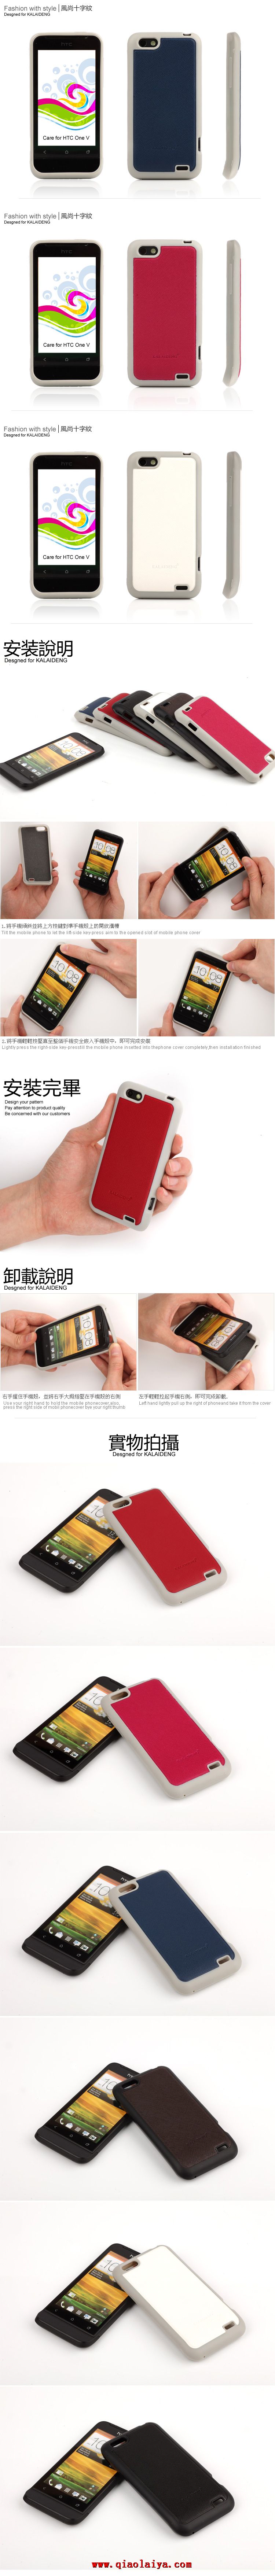 HTC ONE V Leopard coque du mobile T320e silicone souple coquille manchon de protection jaune